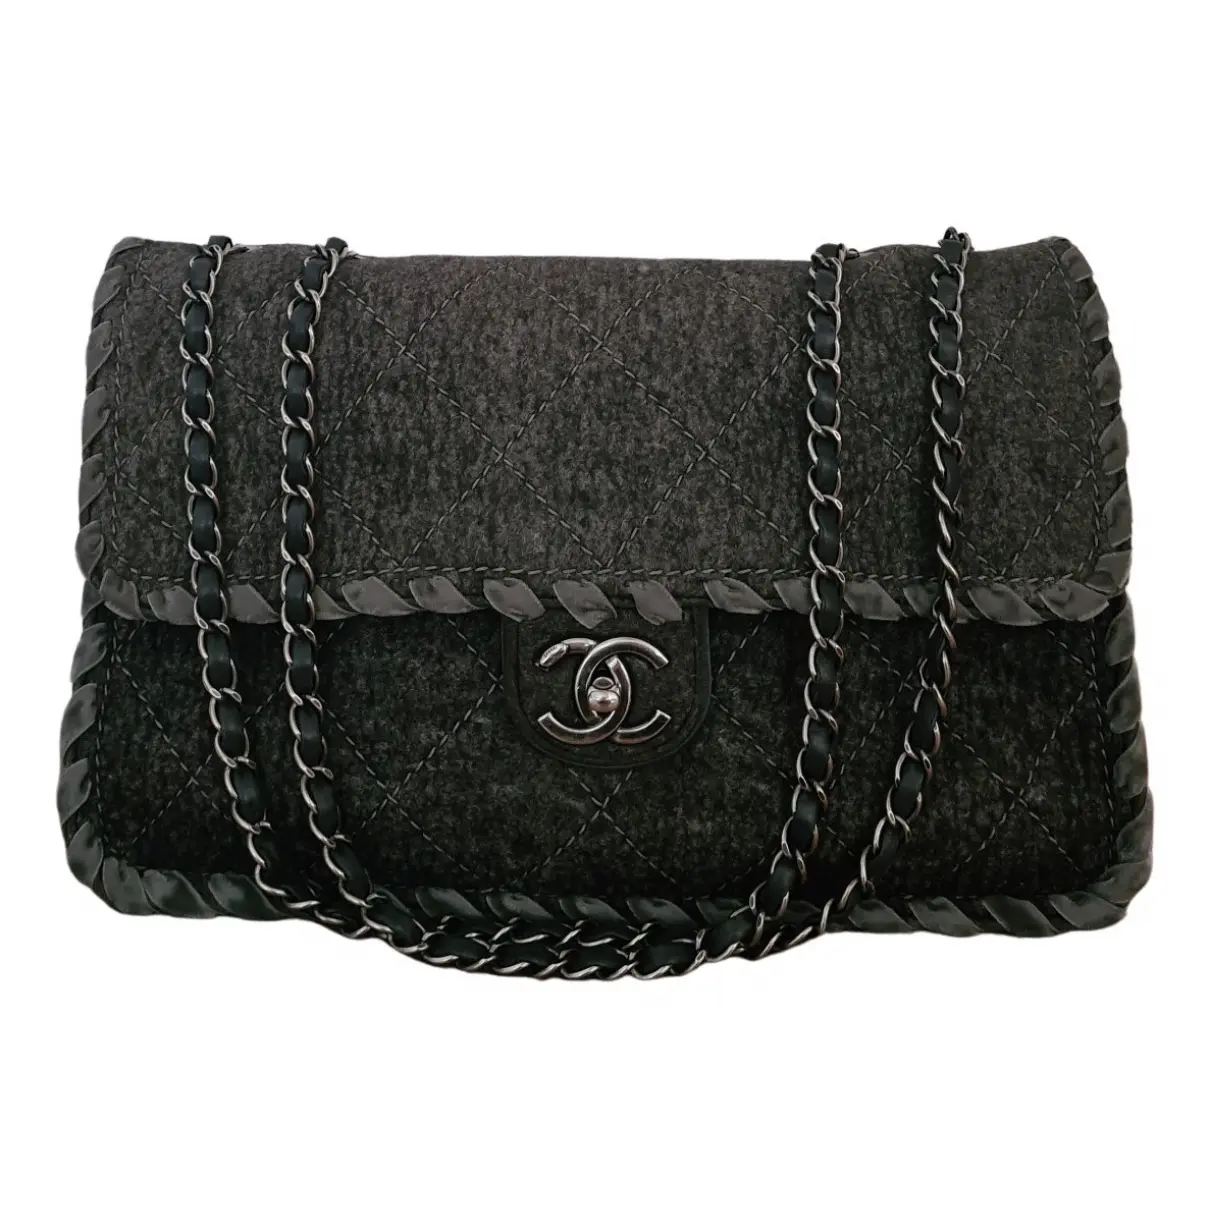 Wool handbag Chanel